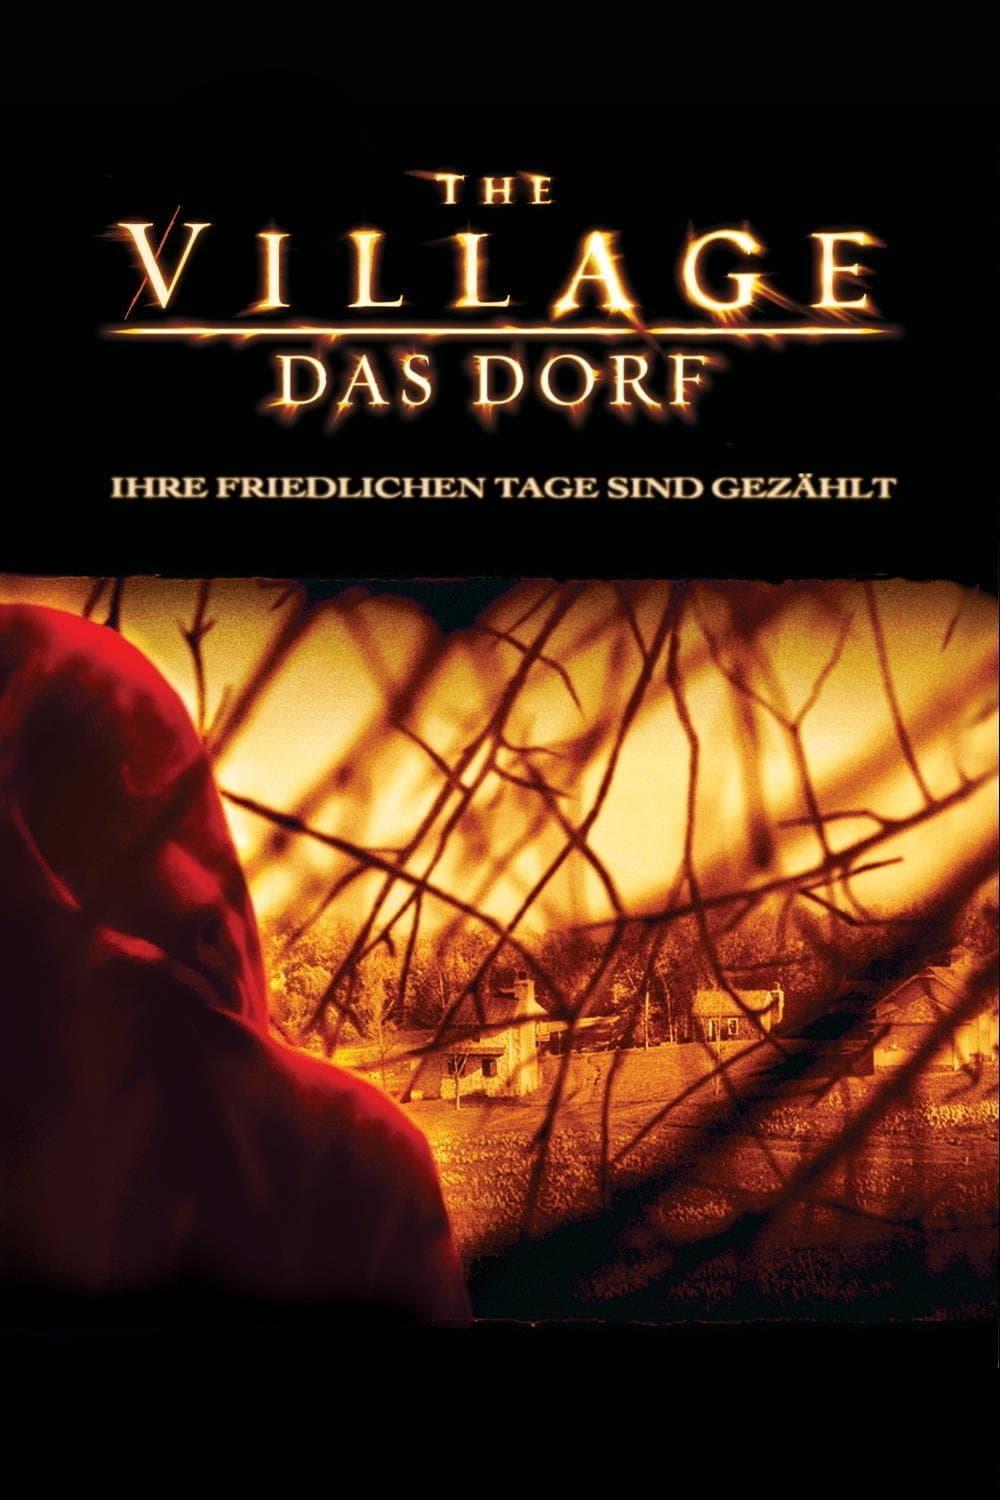 The Village - Das Dorf poster